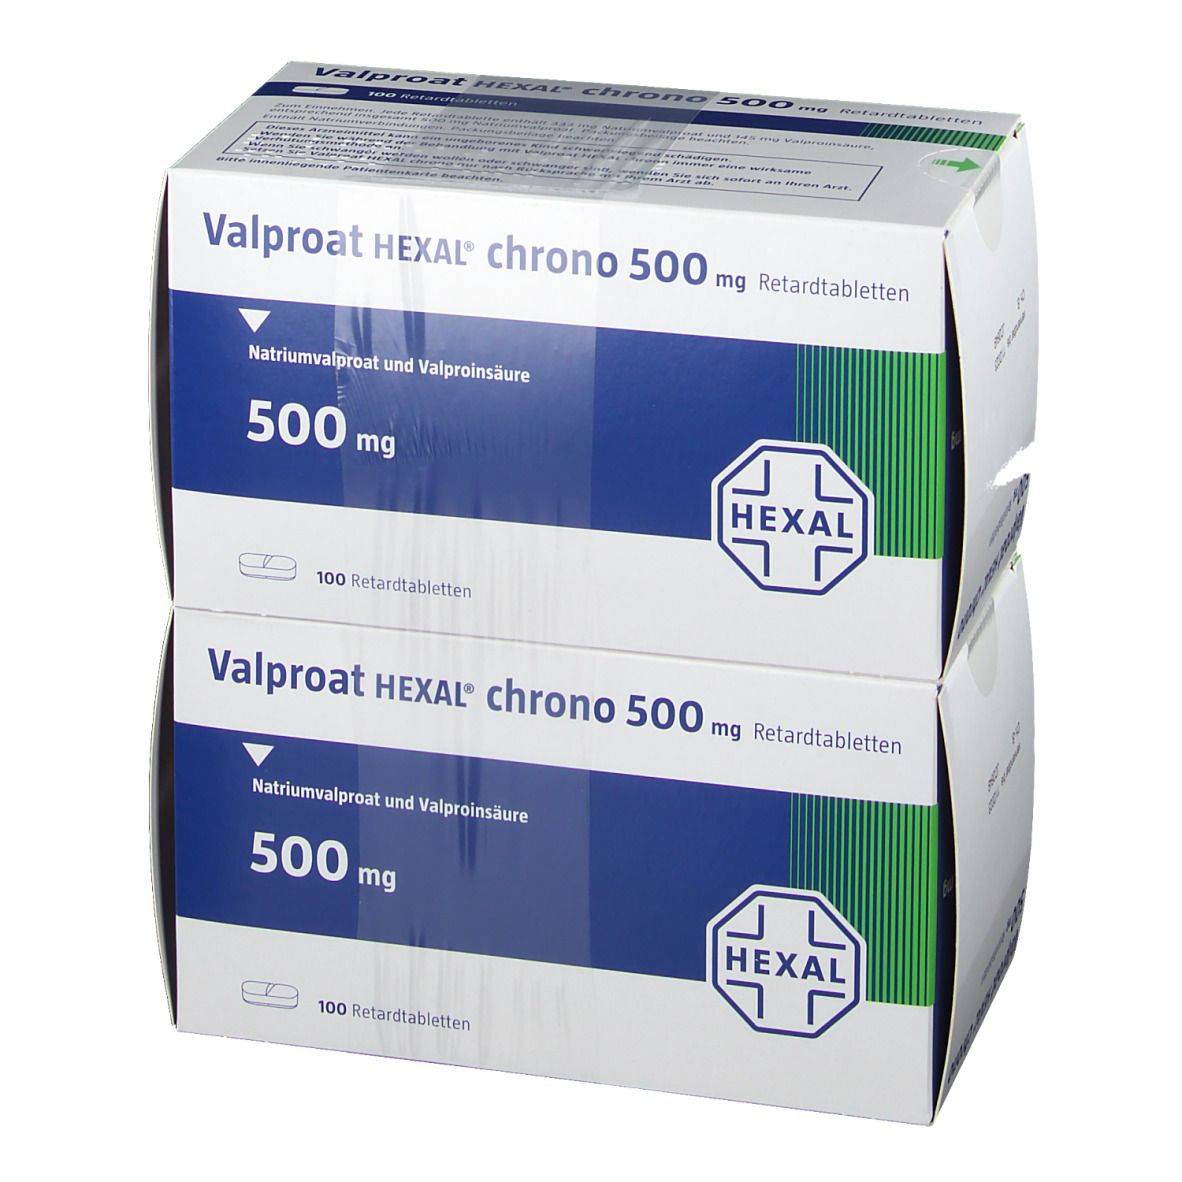 Valproat HEXAL® chrono 500 mg